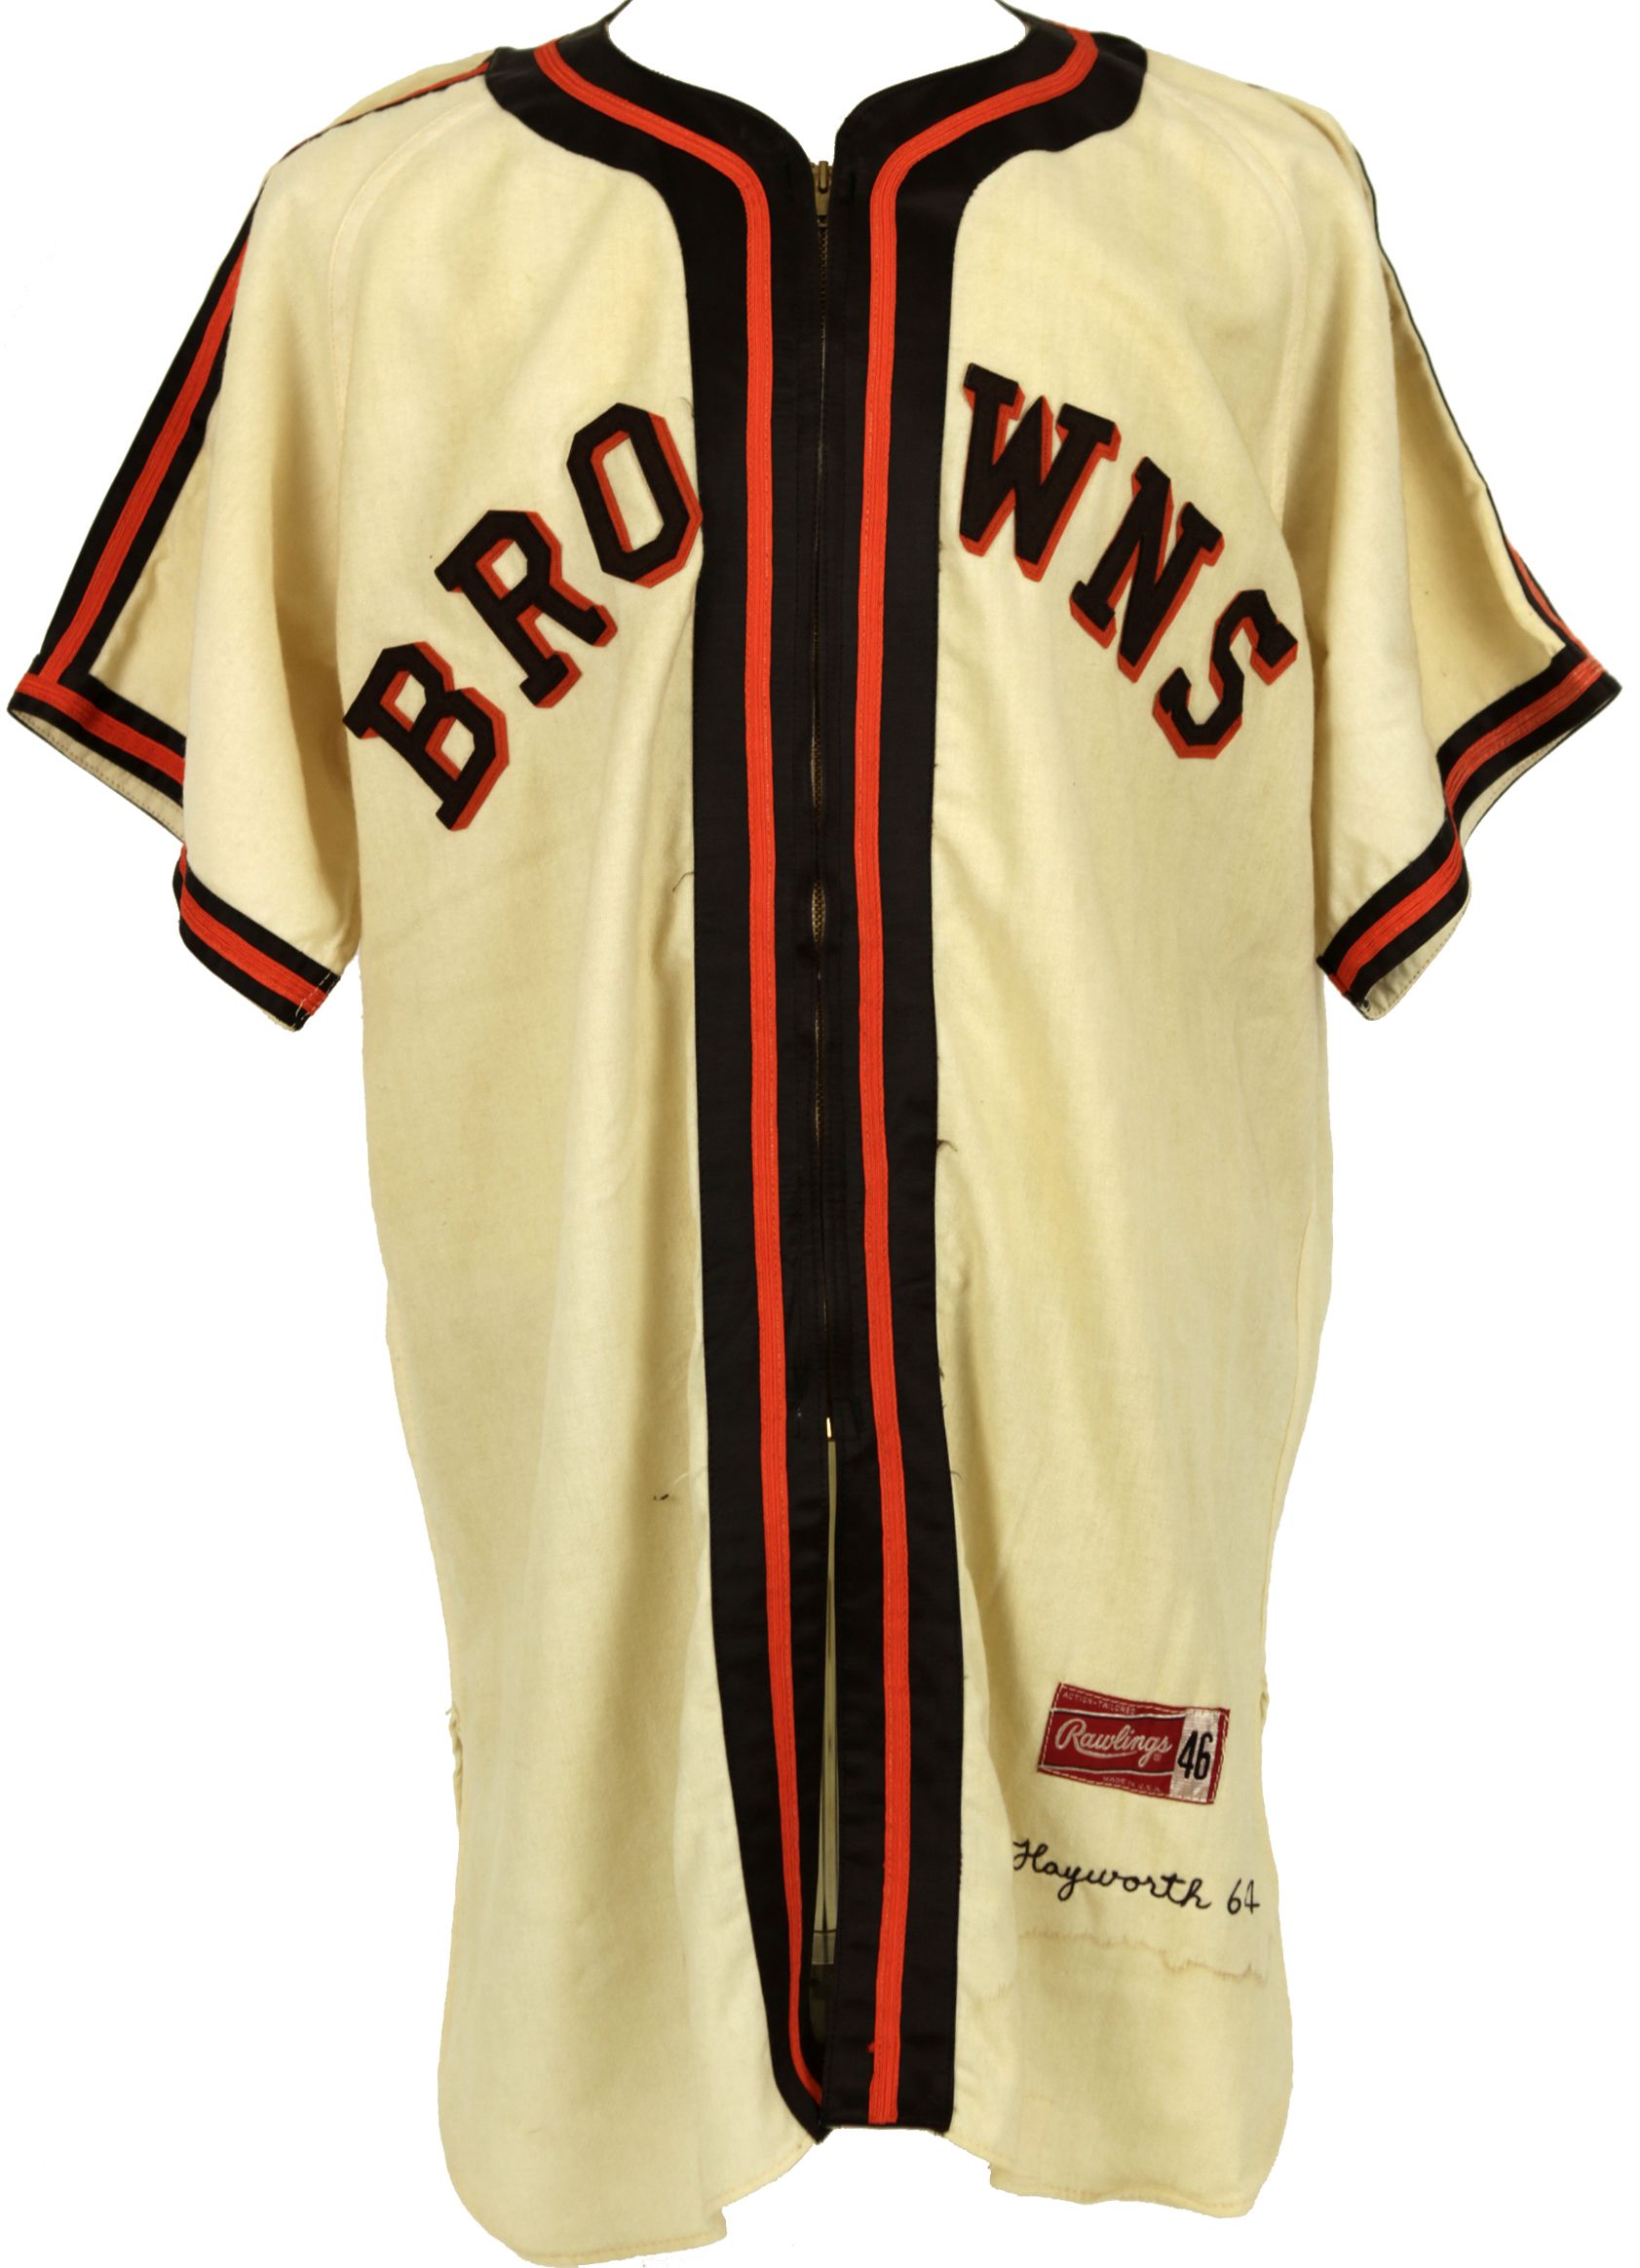 st louis browns uniforms